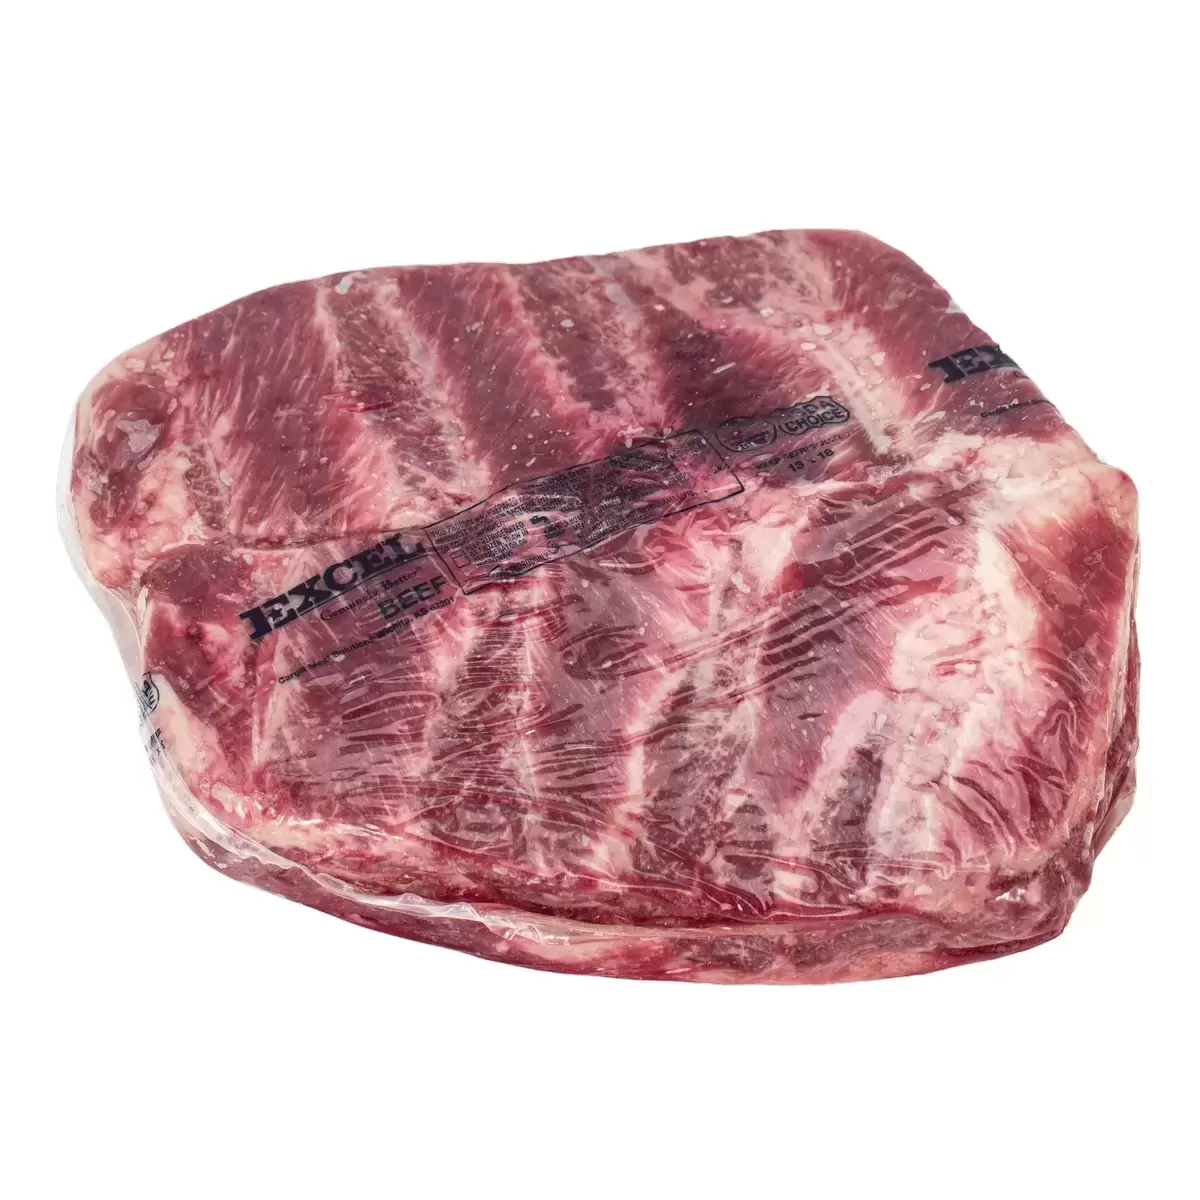 美國特選冷凍翼板肉 21公斤 / 箱